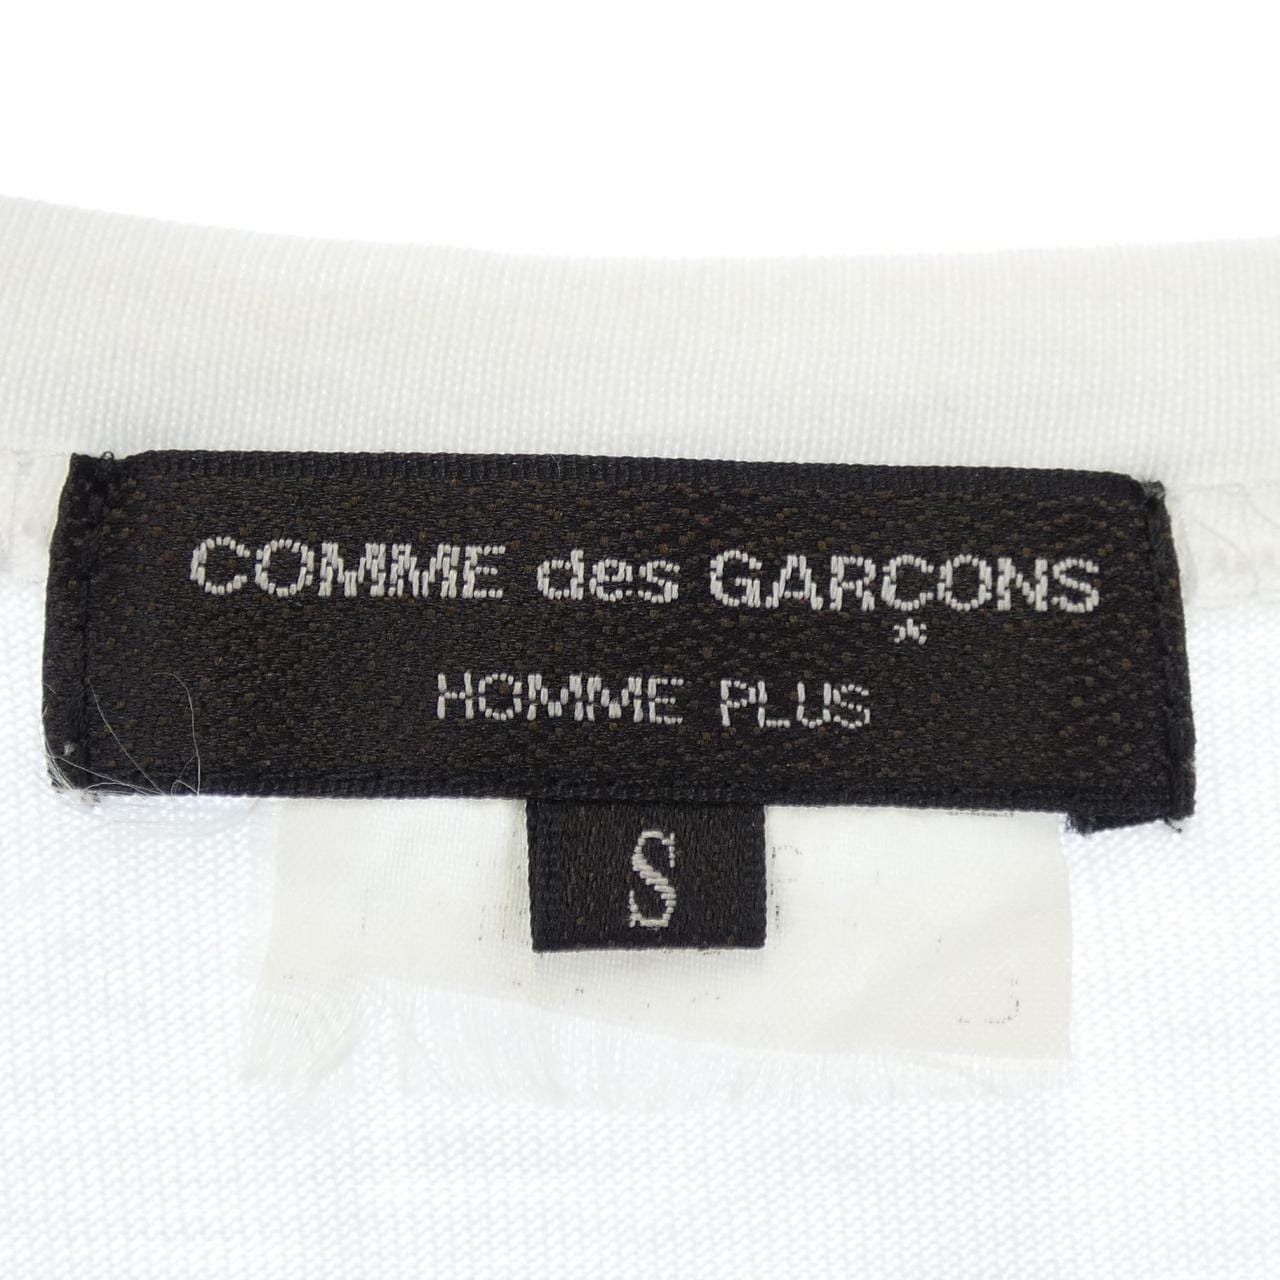 COMDEGALSONU PURUS GARCONS HOMME plus T恤